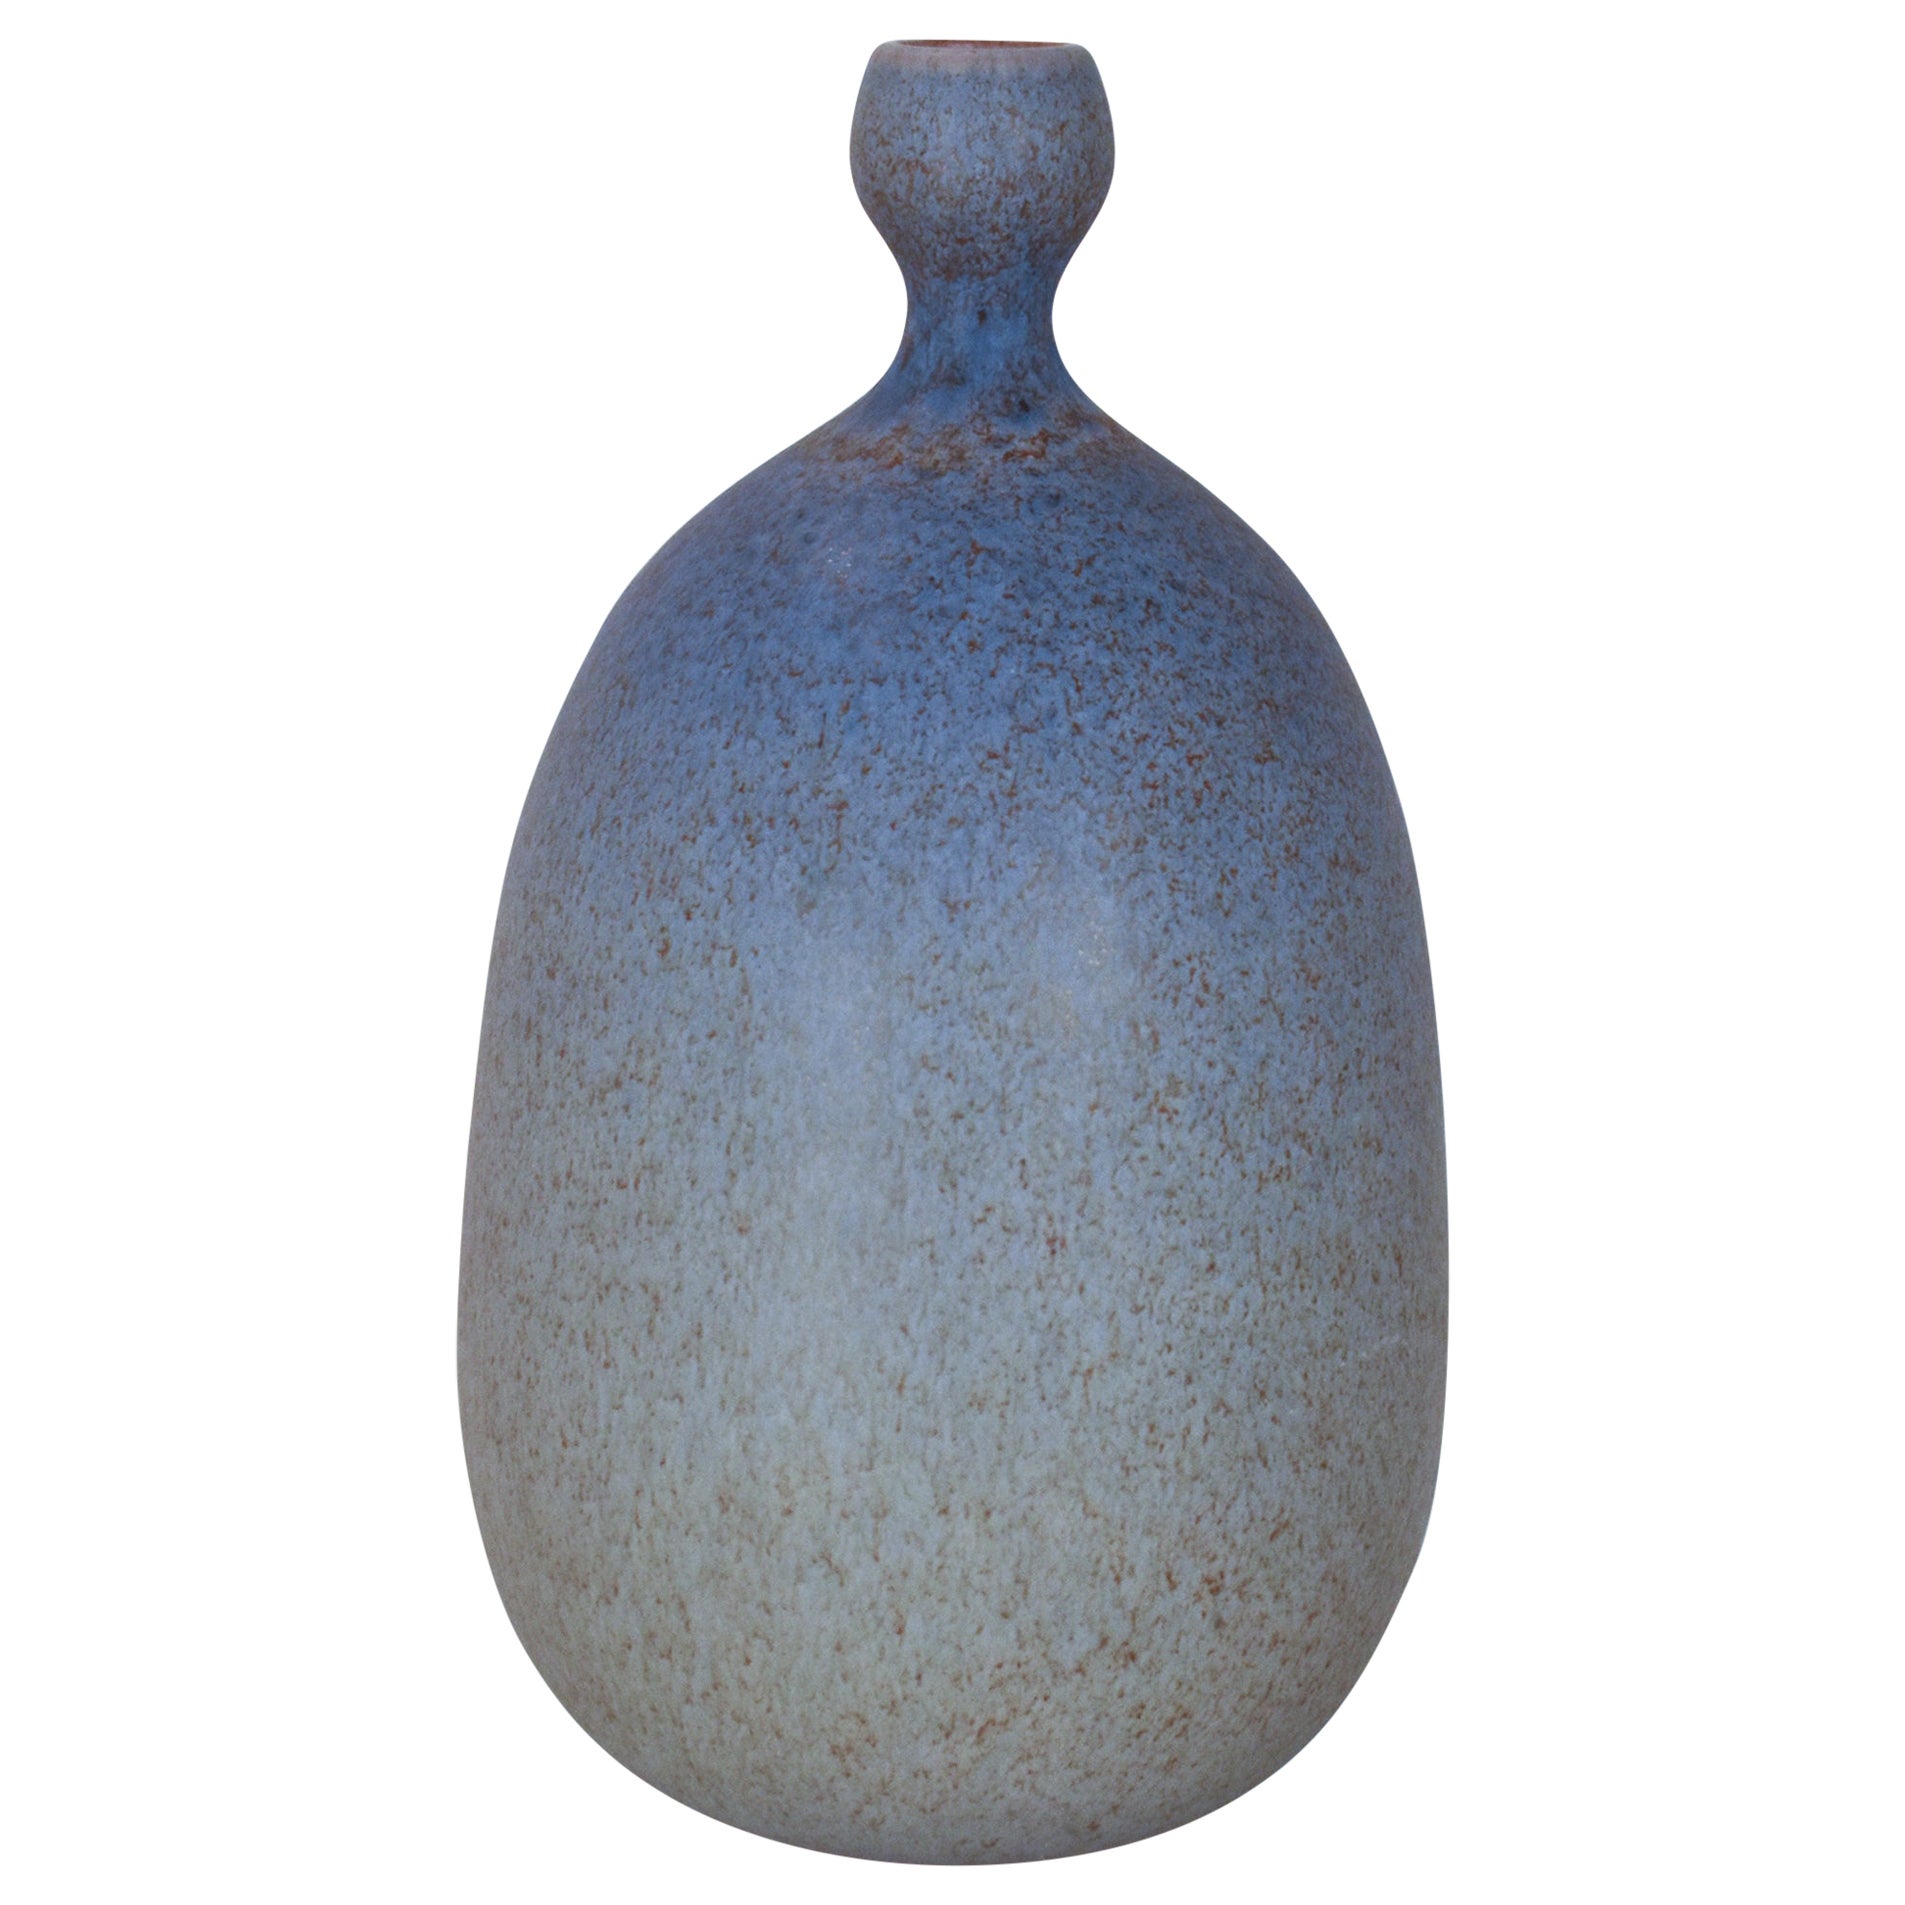 Ceramic vase by Joan Carrillo, Spain 1970's